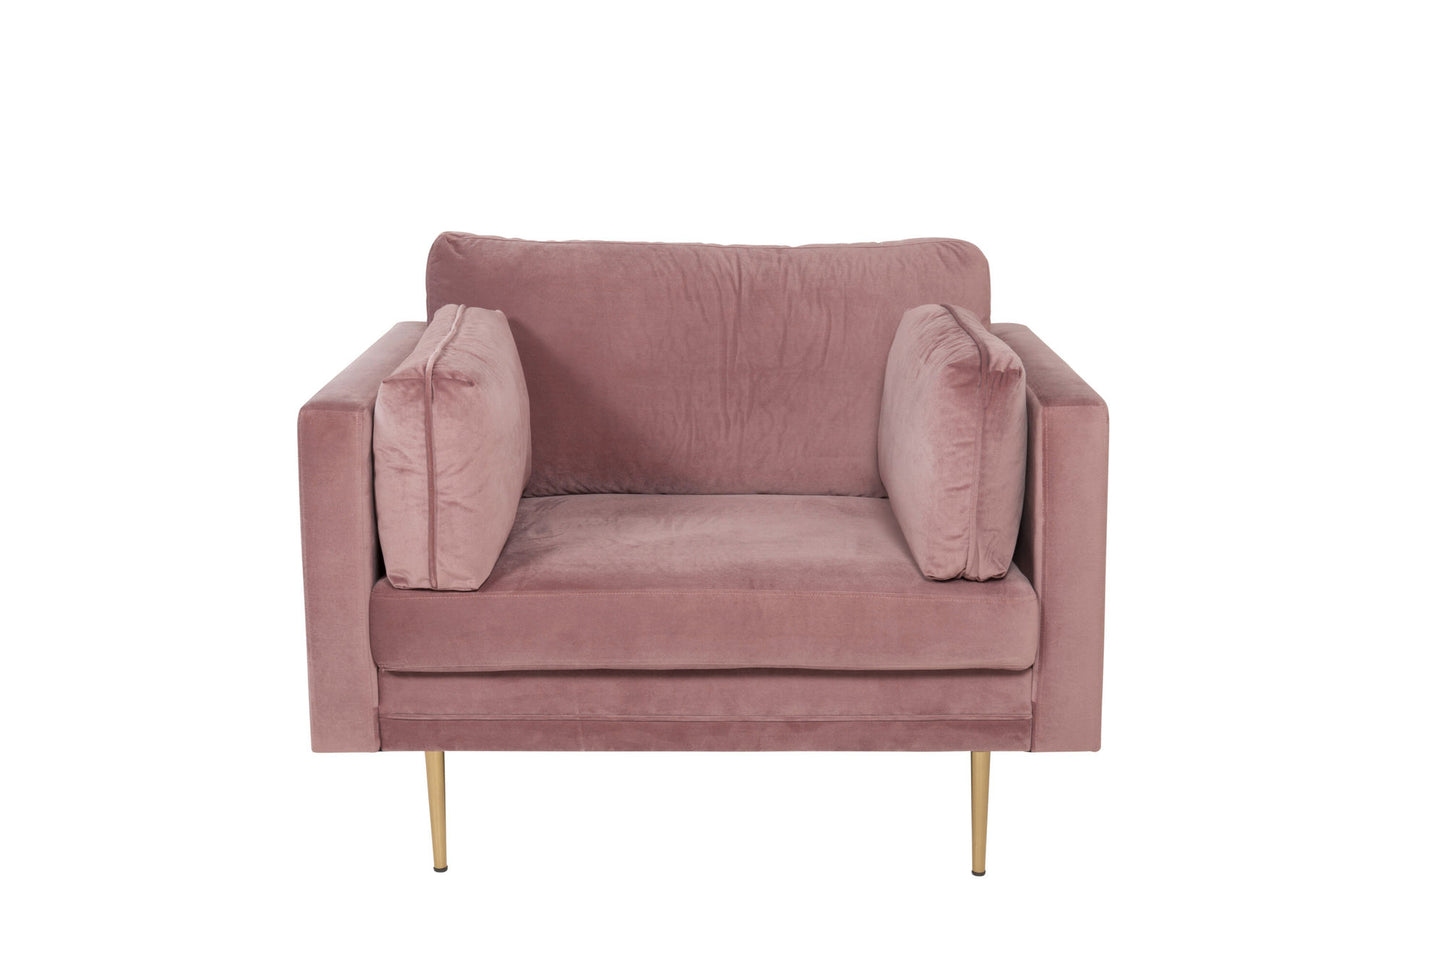 Boom fauteuil roze/goud